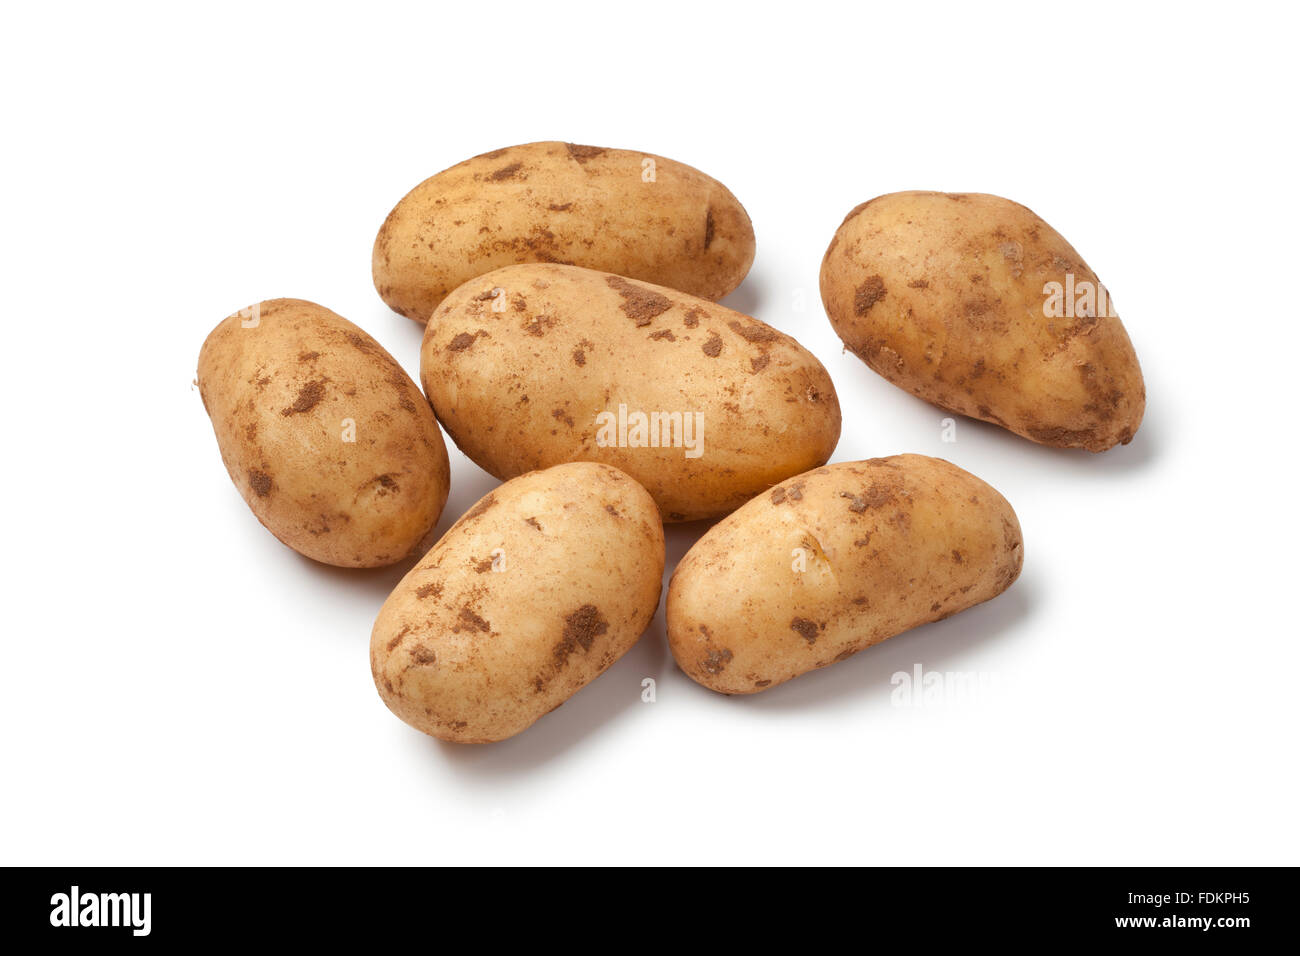 Fresh raw Spunta potatoes on white background Stock Photo